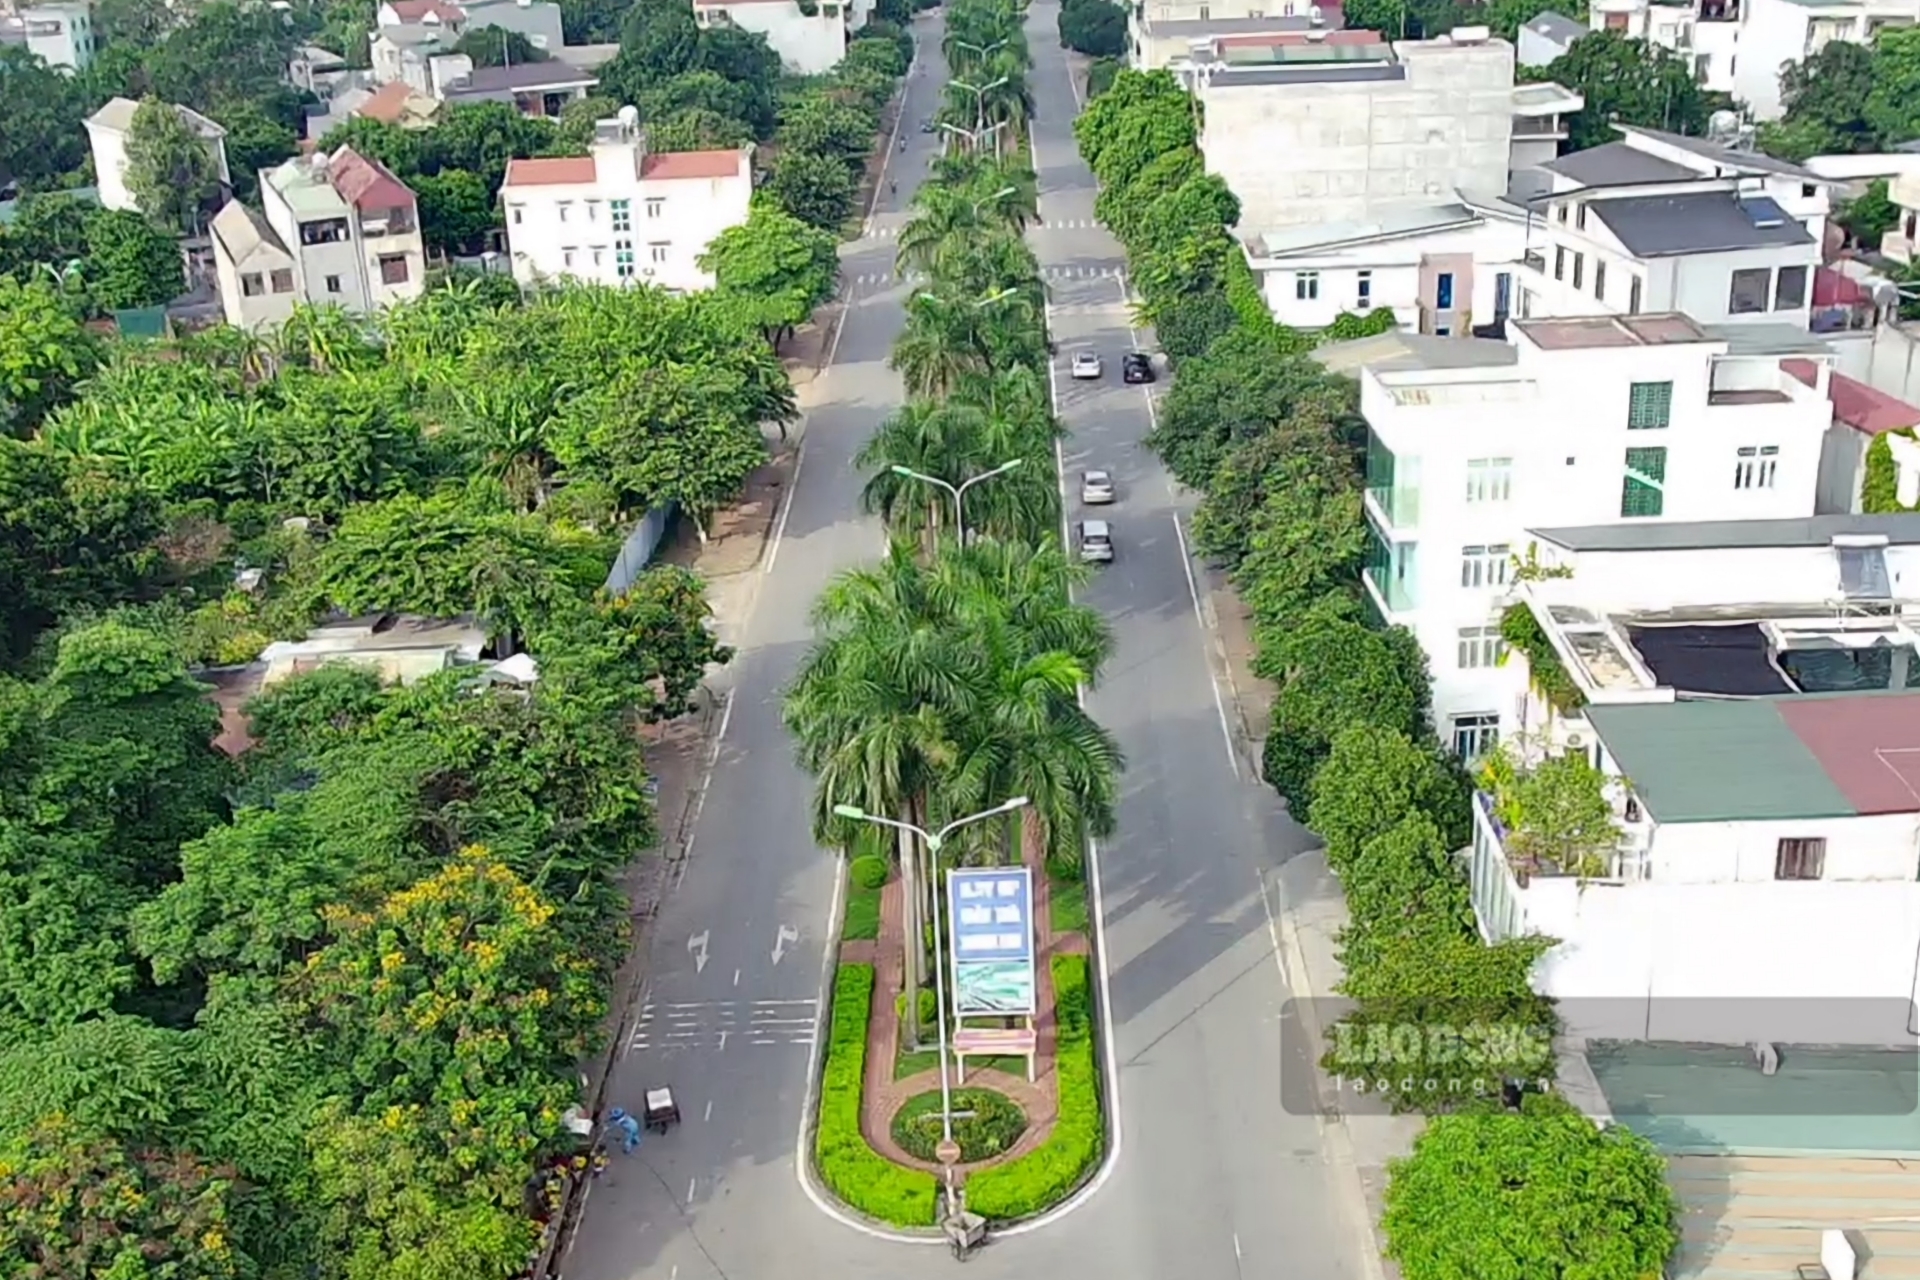 Những năm qua, TP Việt Trì, tỉnh Phú Thọ phát triển nhanh chóng về hạ tầng giao thông, nhiều tuyến đường mới được đầu tư xây dựng; nhiều tuyến đường cũ được cải tạo, nâng cấp khiến cho bộ mặt của thành phố này ngày càng khang trang, hiện đại. Ảnh đường Hòa Phong kéo dài còn hàng cây cau vua: Tô Công.